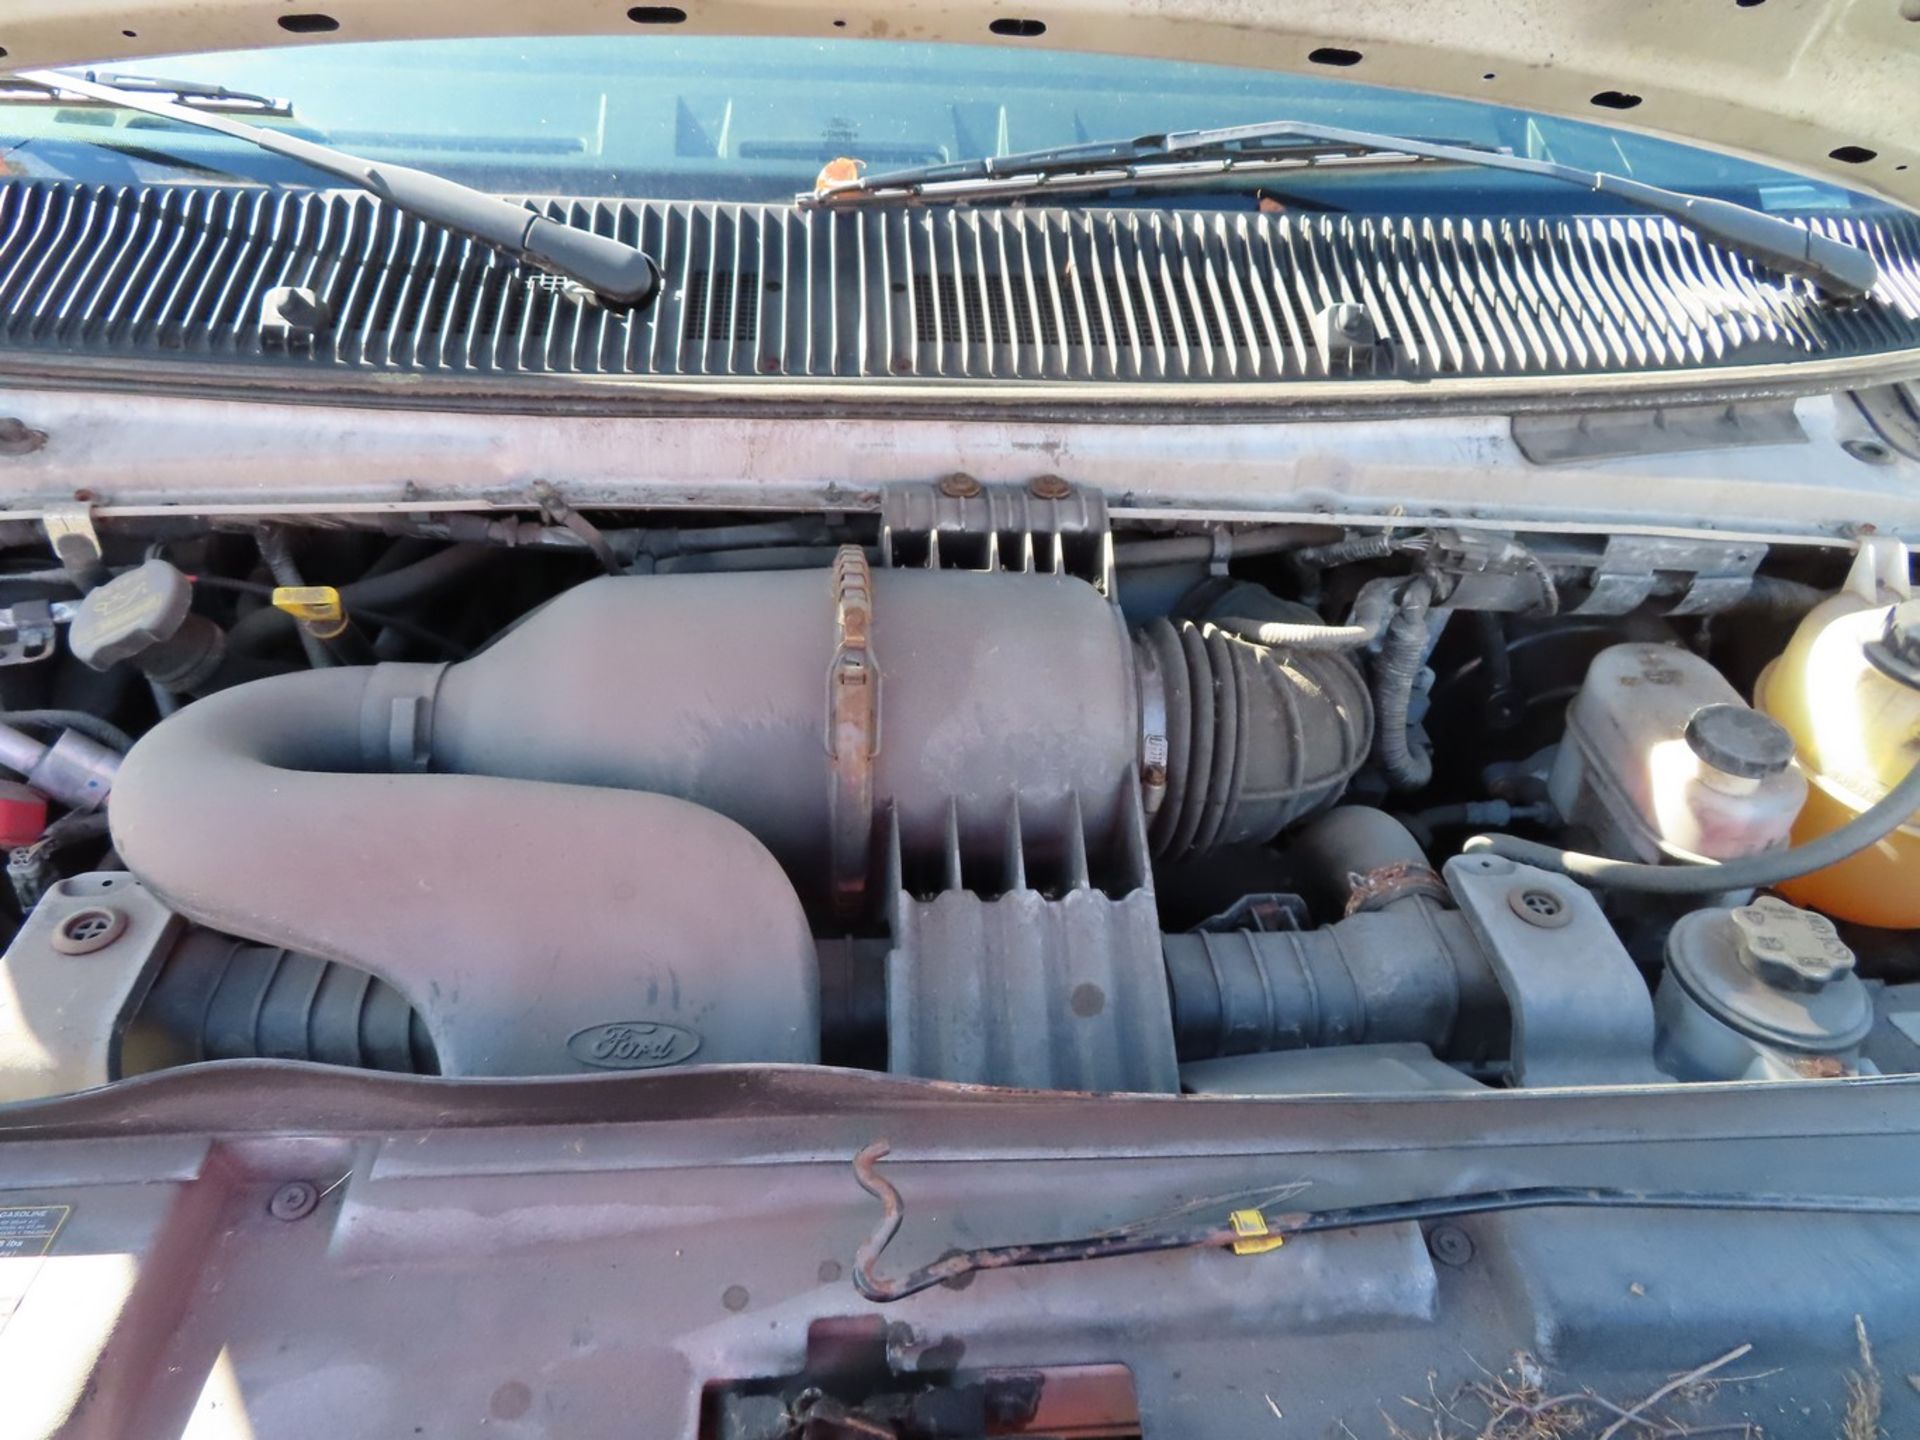 2012 Ford E-350 Van, 5.4L V8 Engine, 51,007 Miles - Image 6 of 9